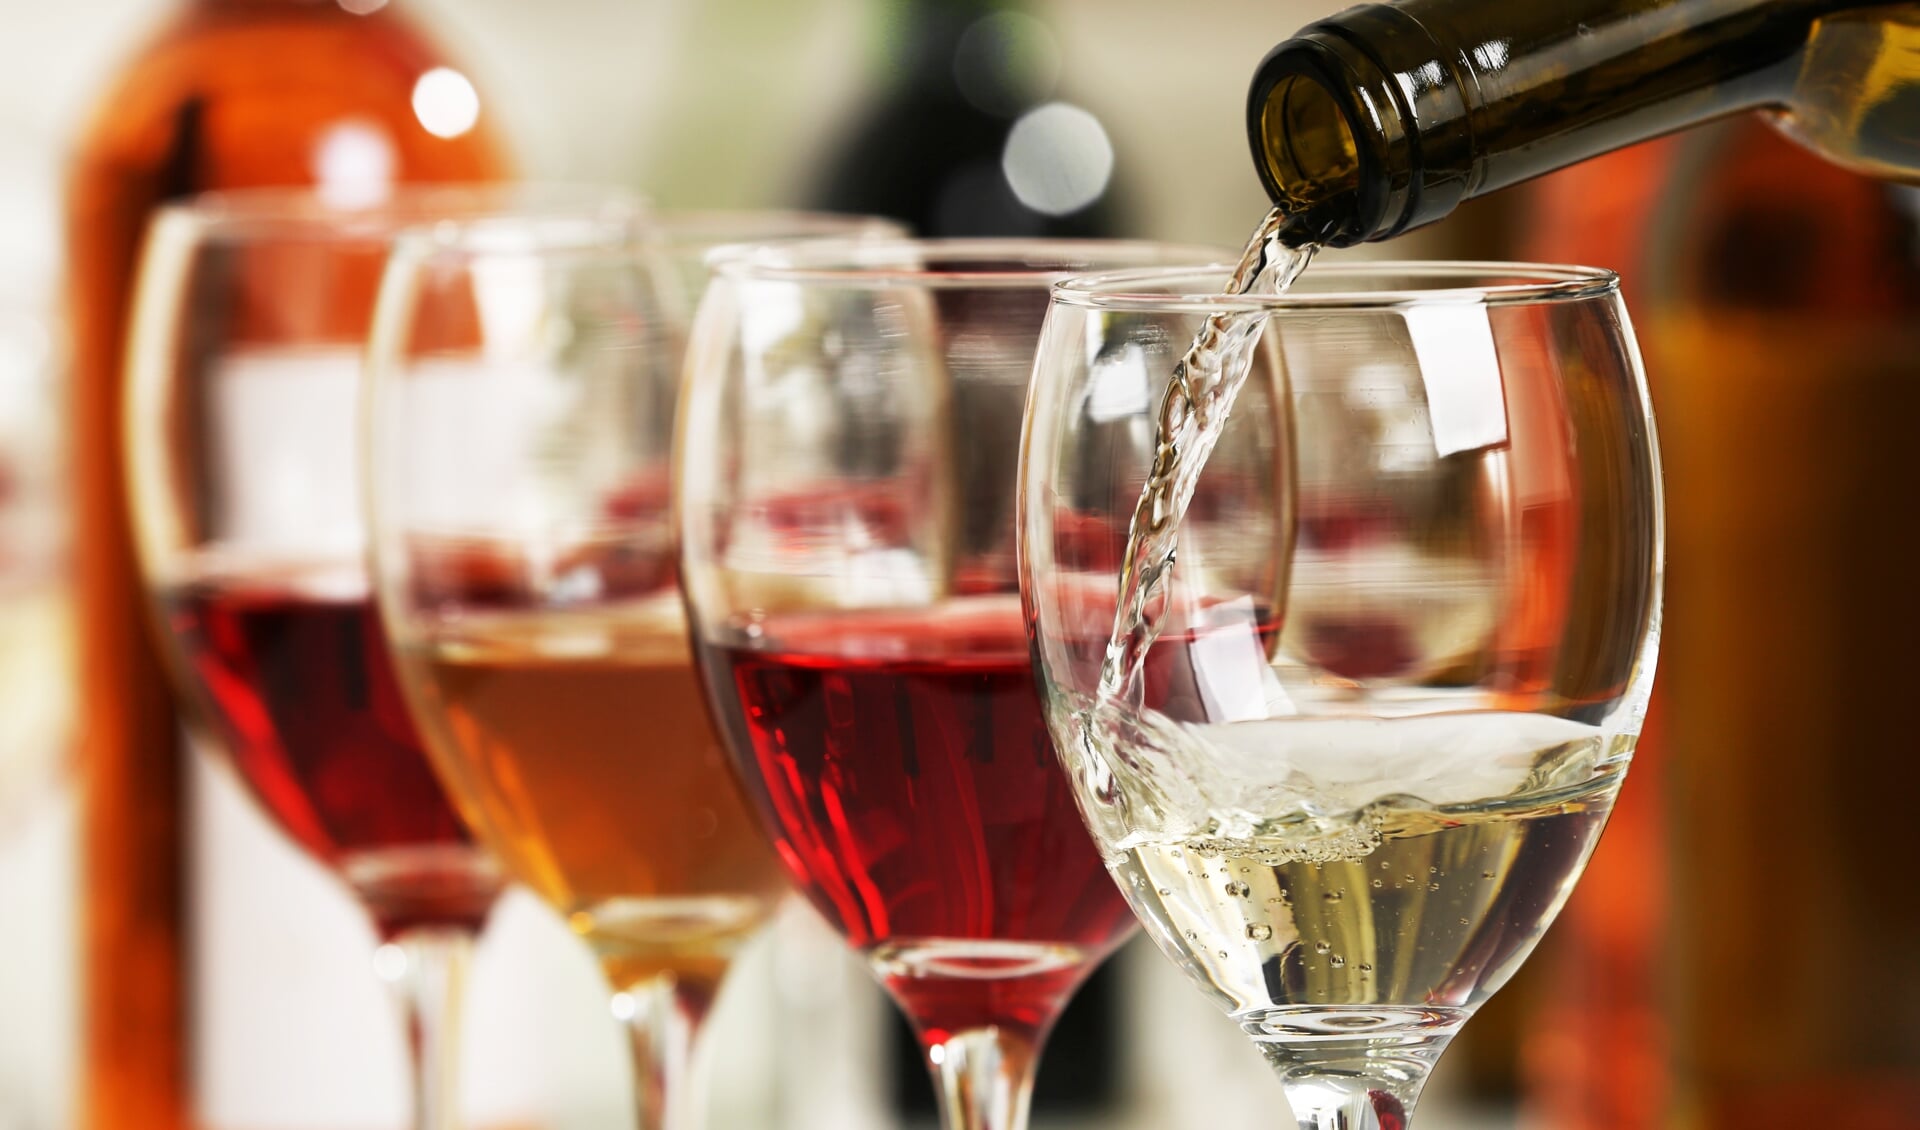 Wijn is een bijzonder divers product; er is voor iedere liefhebber en gelegenheid een passende wijn te vinden!